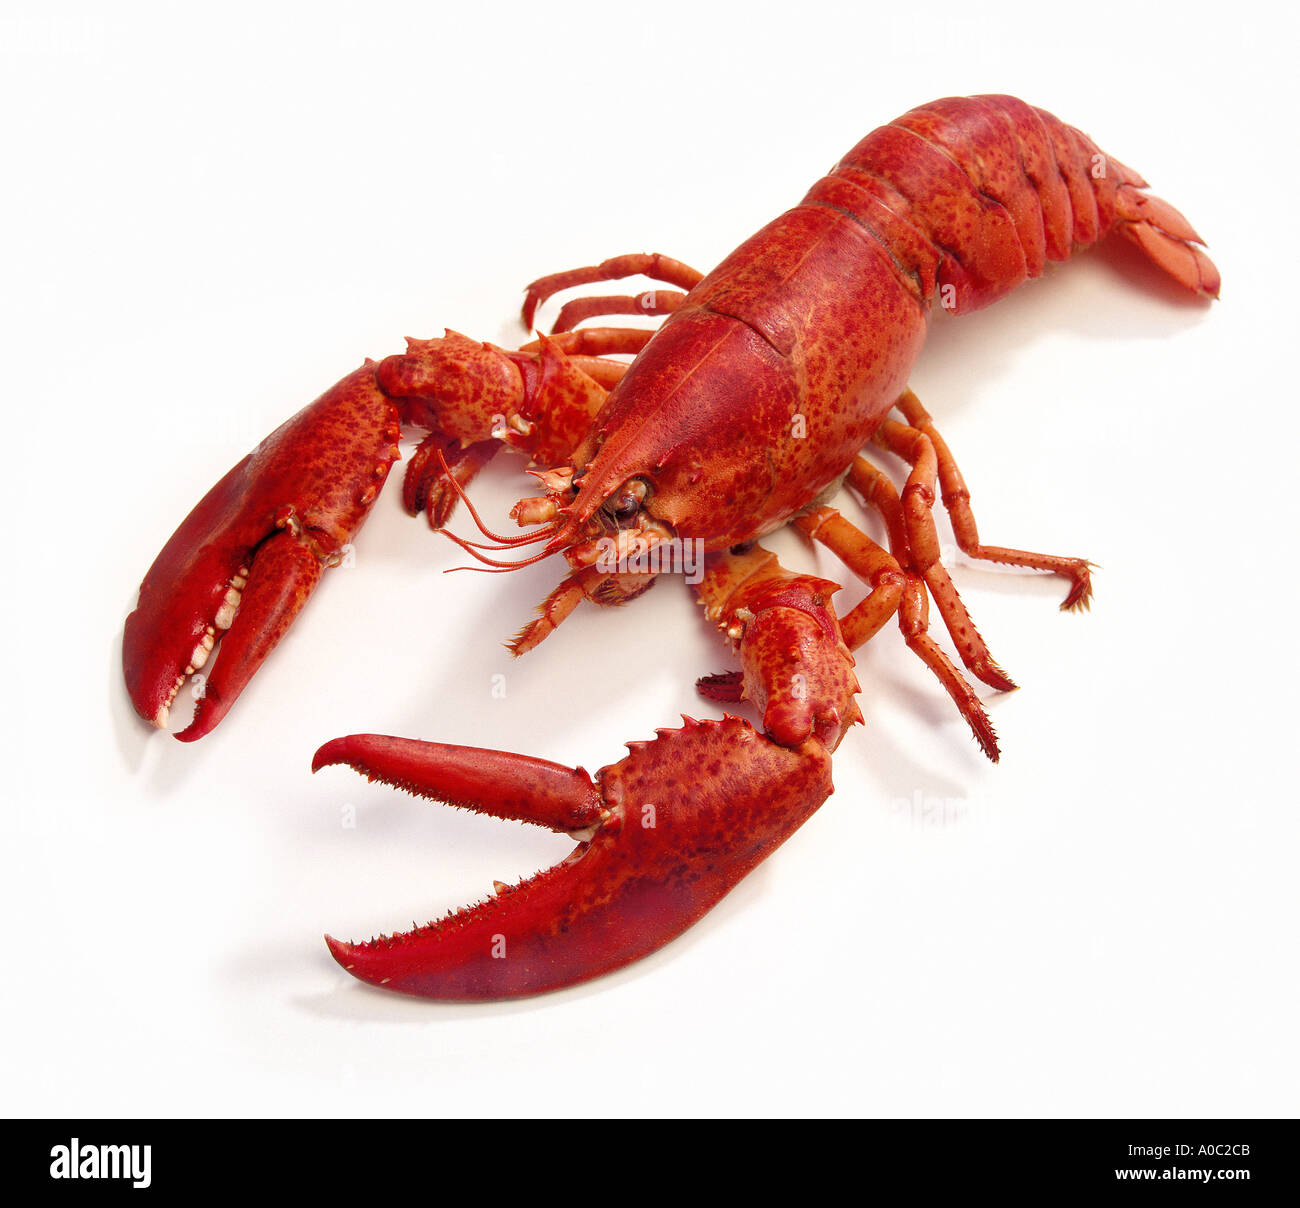 Les écrevisses homard cuit Spécialités alimentaires crustacés fruits de mer cher délicatesse animal cancer ciseaux rouges Banque D'Images